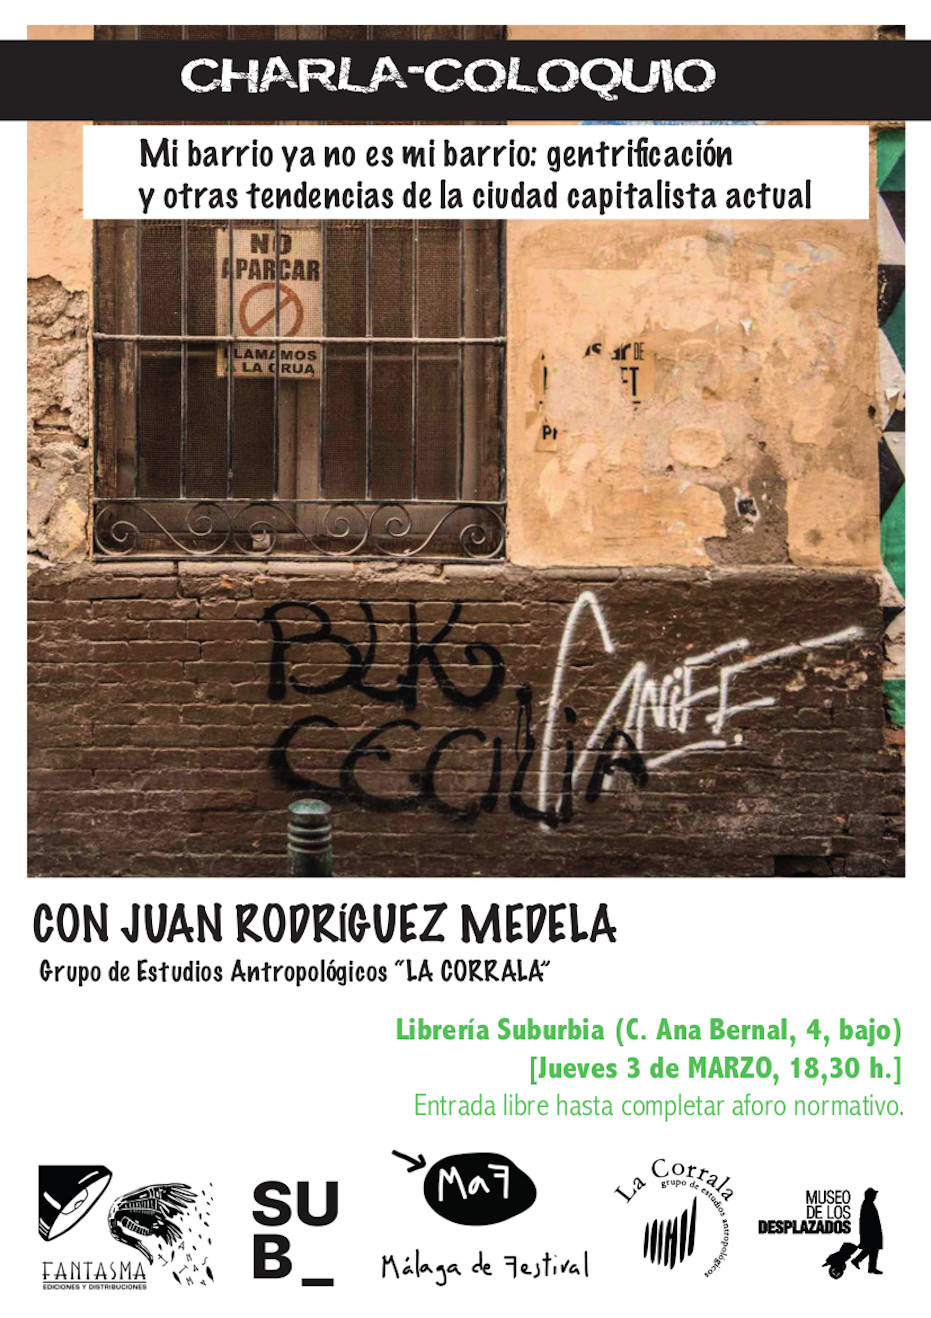 Charla-coloquio con Juan Rodríguez Medela: Mi barrio ya no es mi barrio, gentrificación y otras tendencias de la ciudad capitalista actual